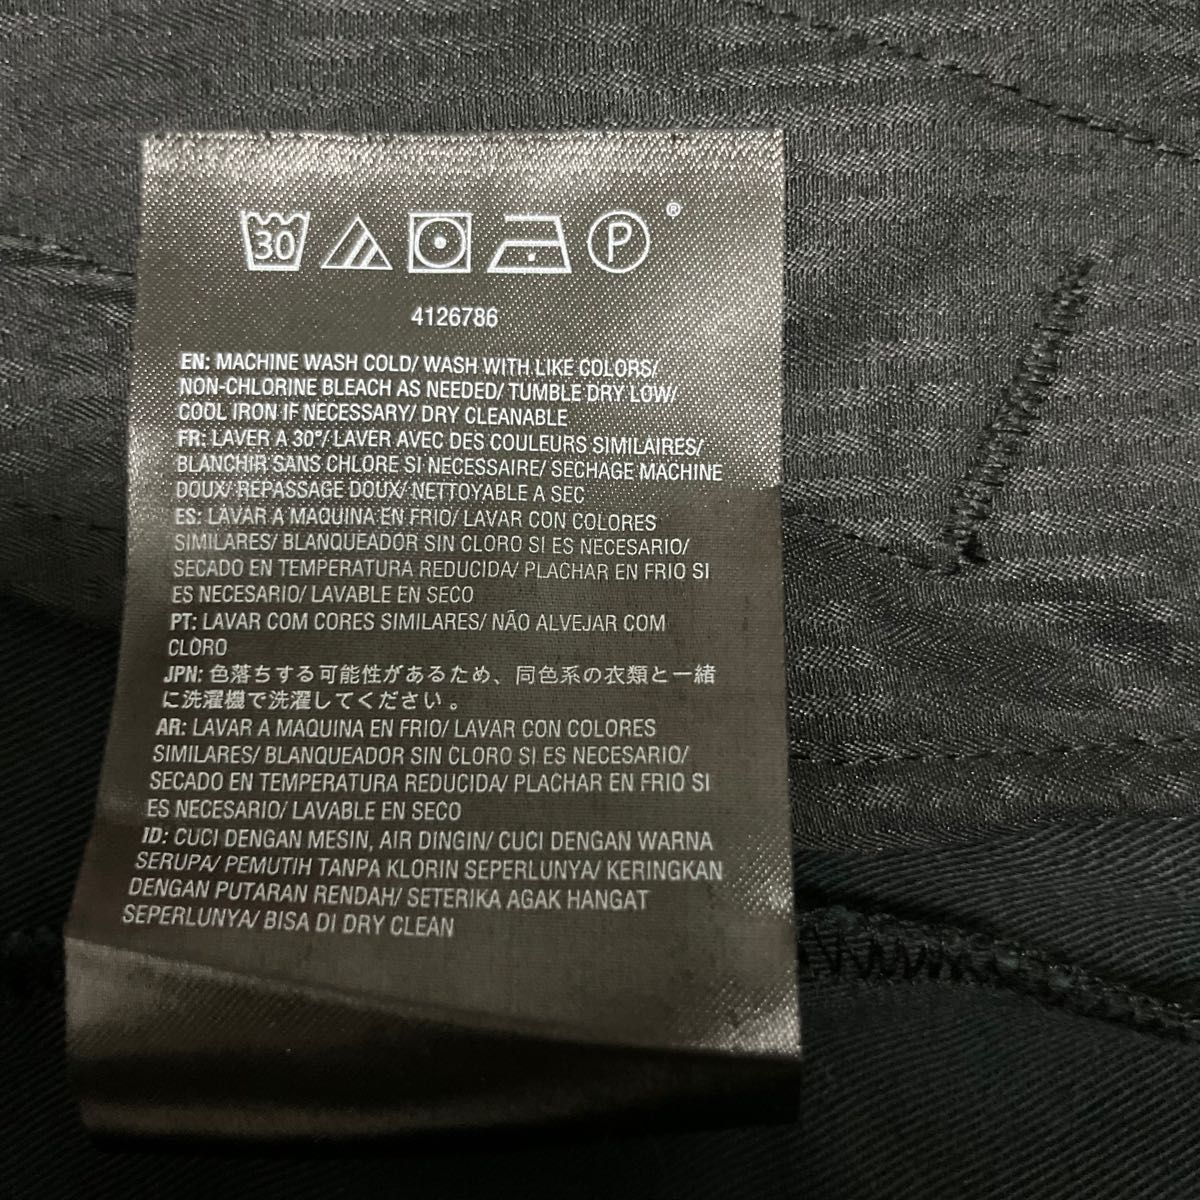 ボルコム　新品未使用タグ付き　ジャケット　パーカー　 フーディー　メンズ　フード付き　裏起毛　黒　Sサイズ　volcom 